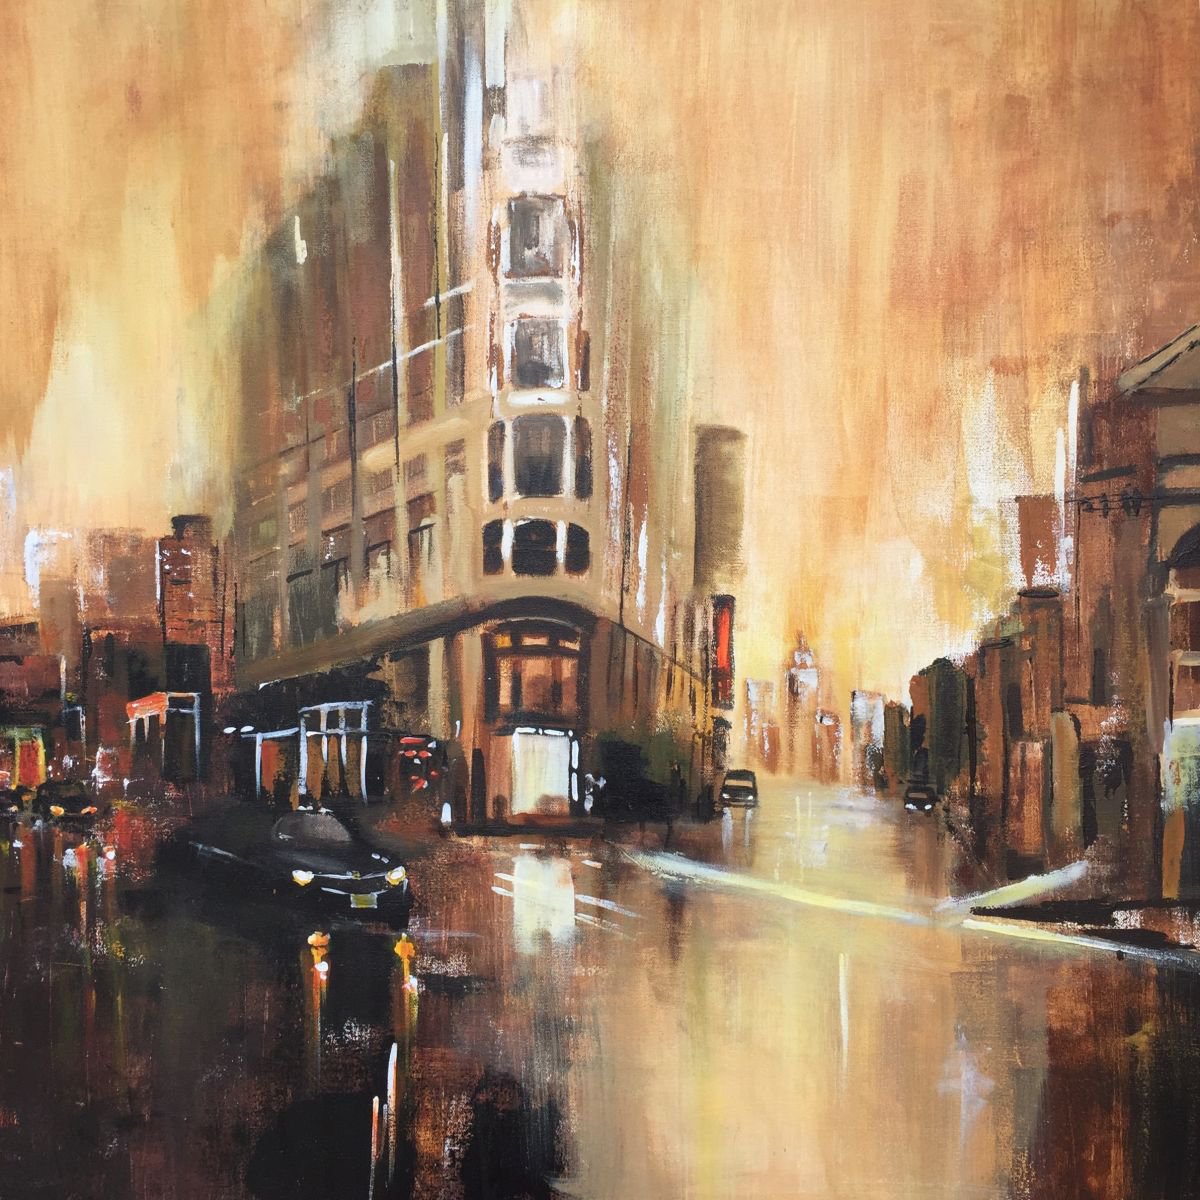 Rainy evening in NY streets by Vandana Mehta